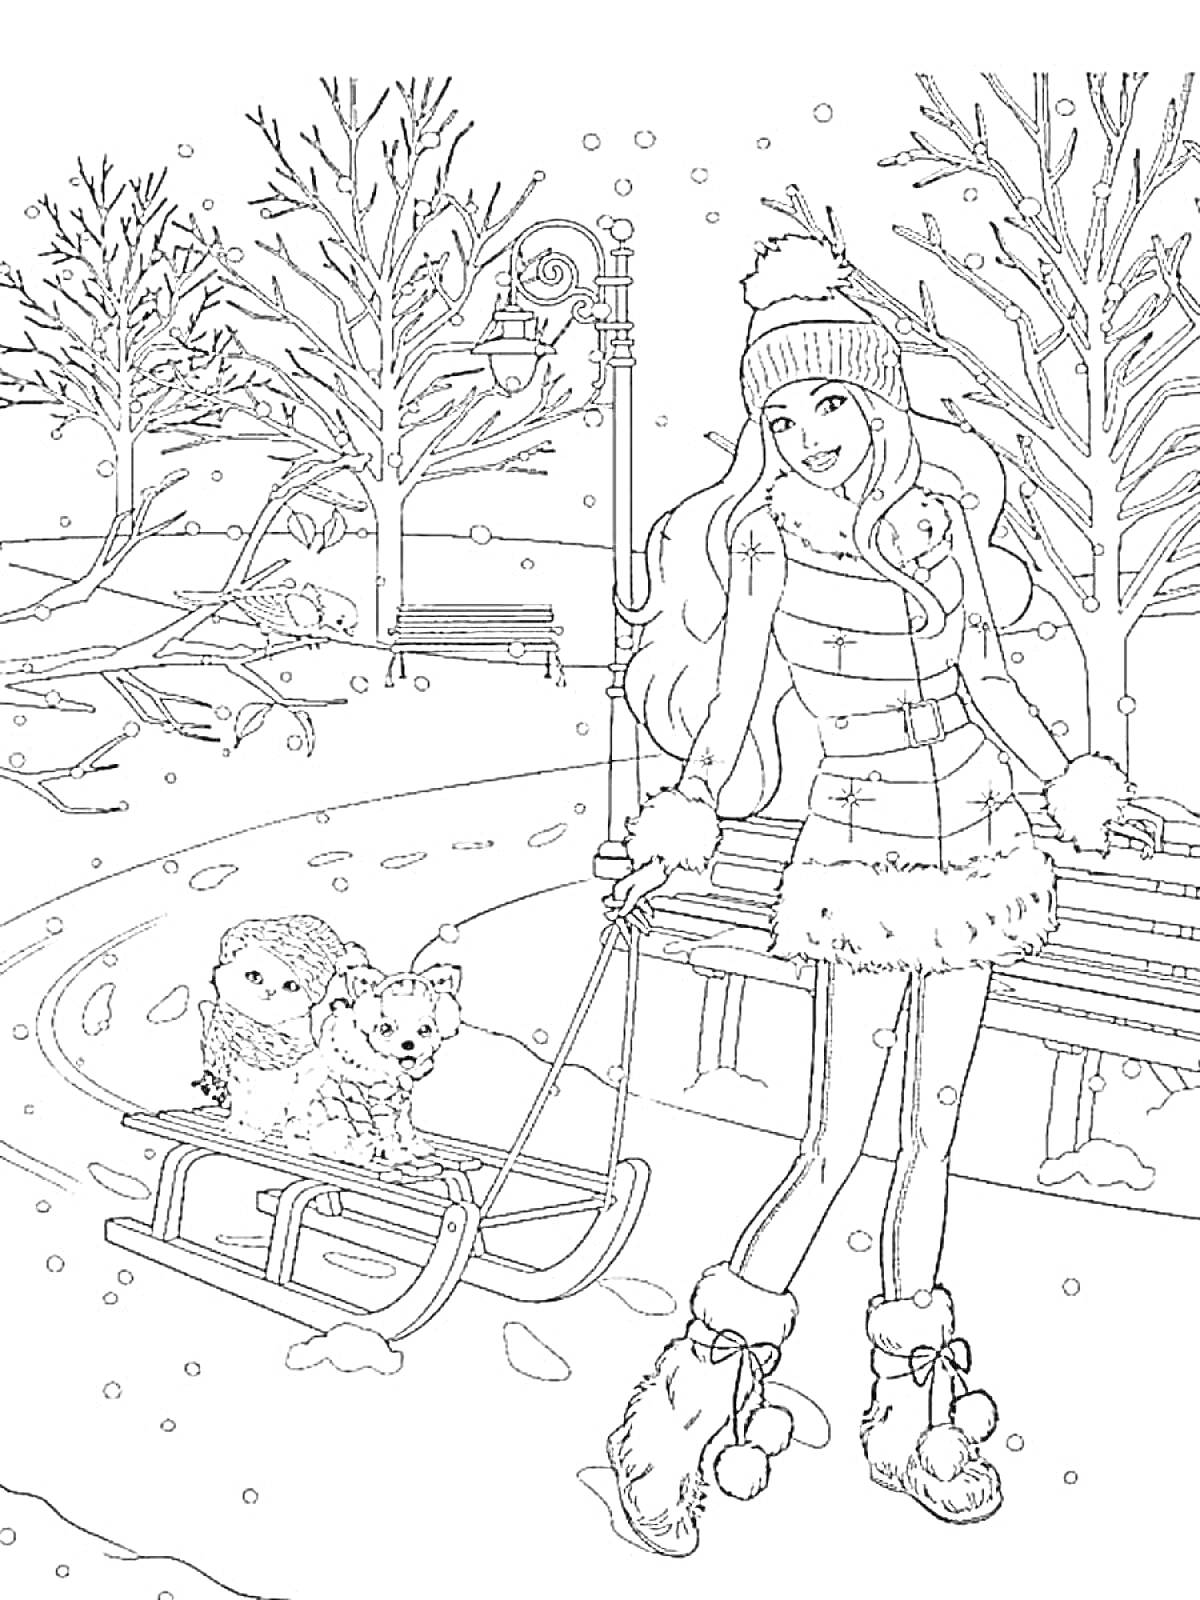 РаскраскаБарби в зимней одежде с шапкой, катящая санки с двумя собаками в зимнем парке с деревьями и скамейкой, снег